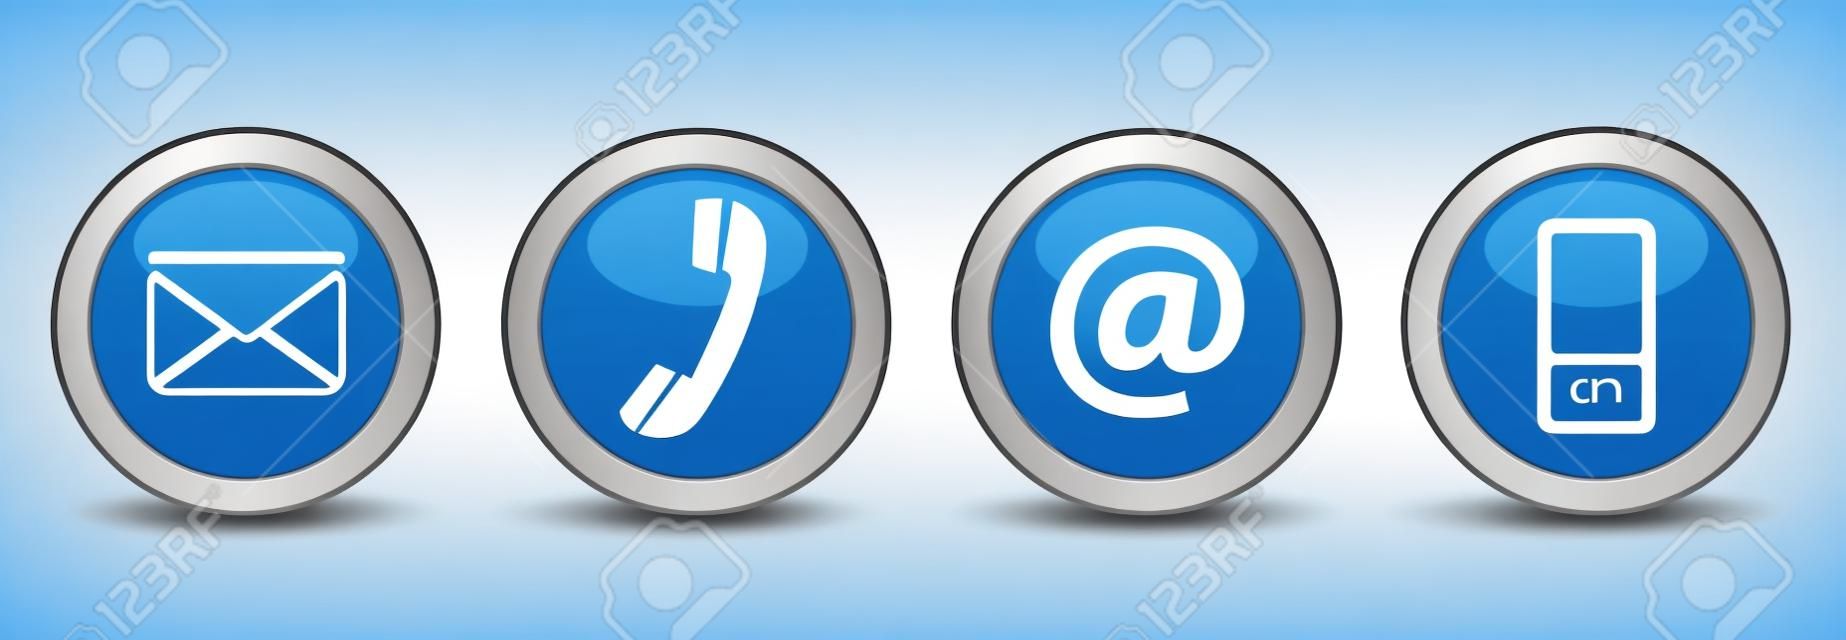 Skontaktuj się z nami internetowych przyciski zestaw z e-mail, na, telefon i ikony telefony na niebieskim srebrny znaczek wektor EPS 10 ilustracji na białym tle.